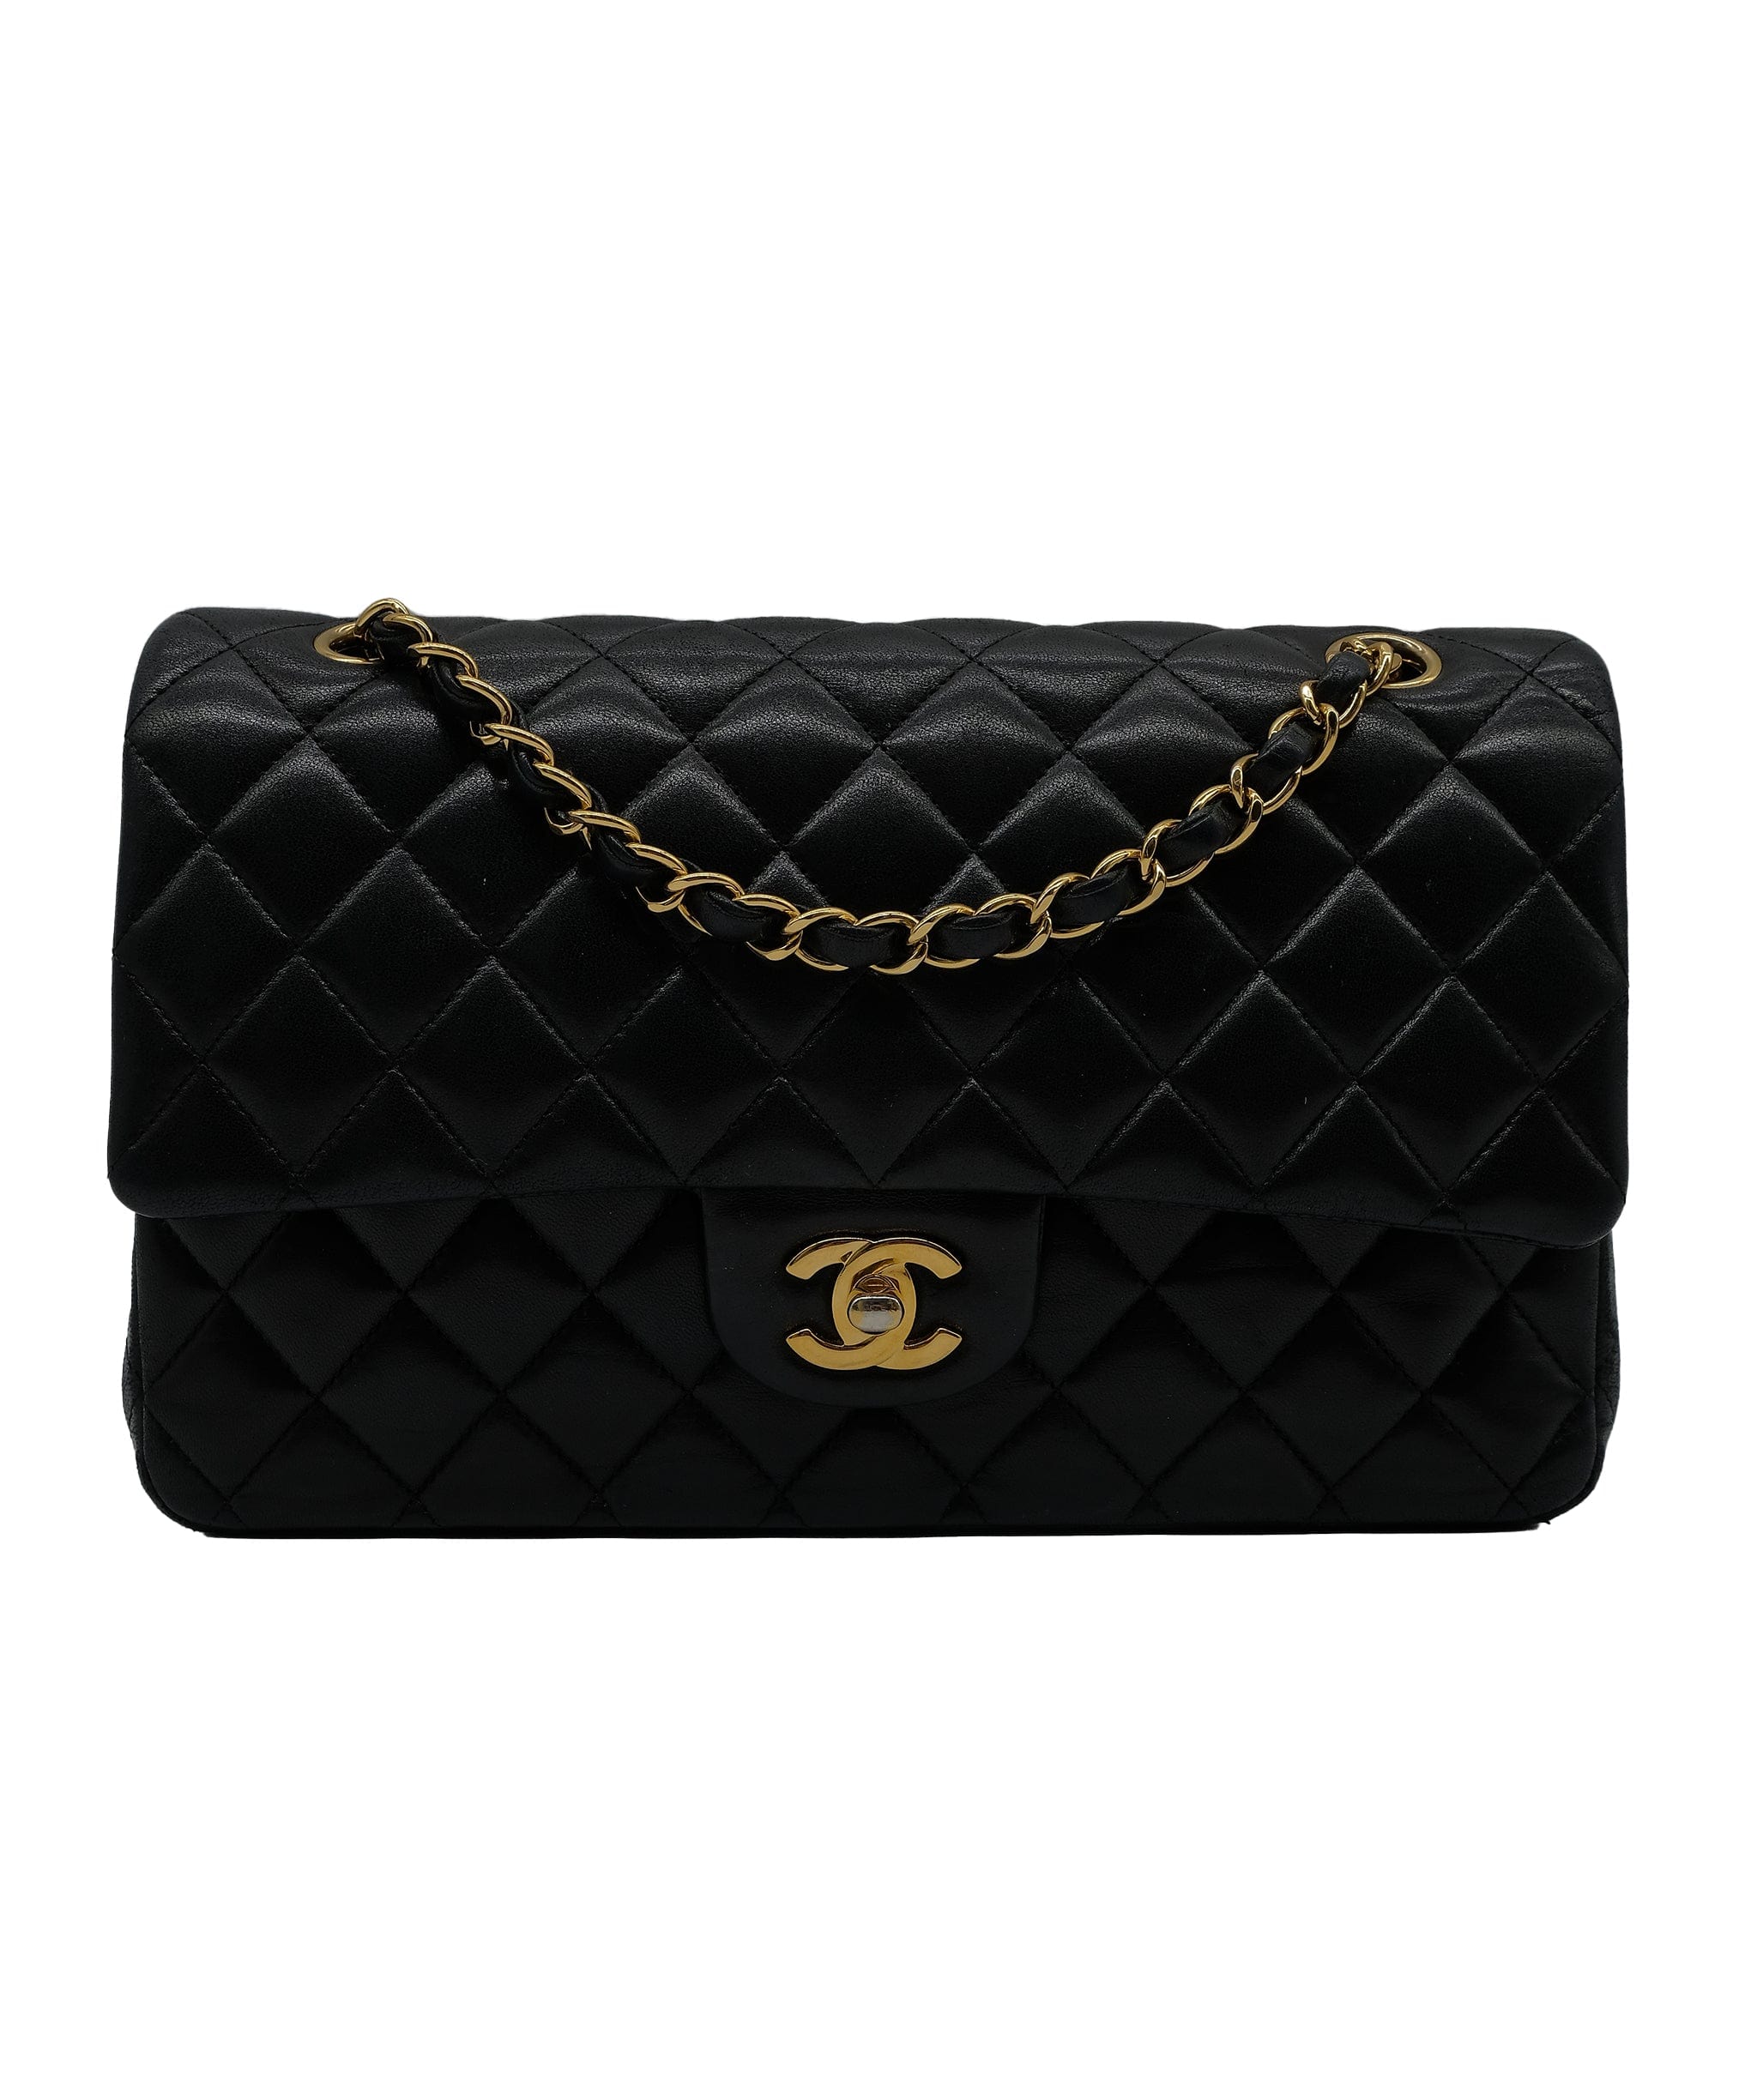 Chanel Chanel Med classic Flap Lambskin Black RJL1981